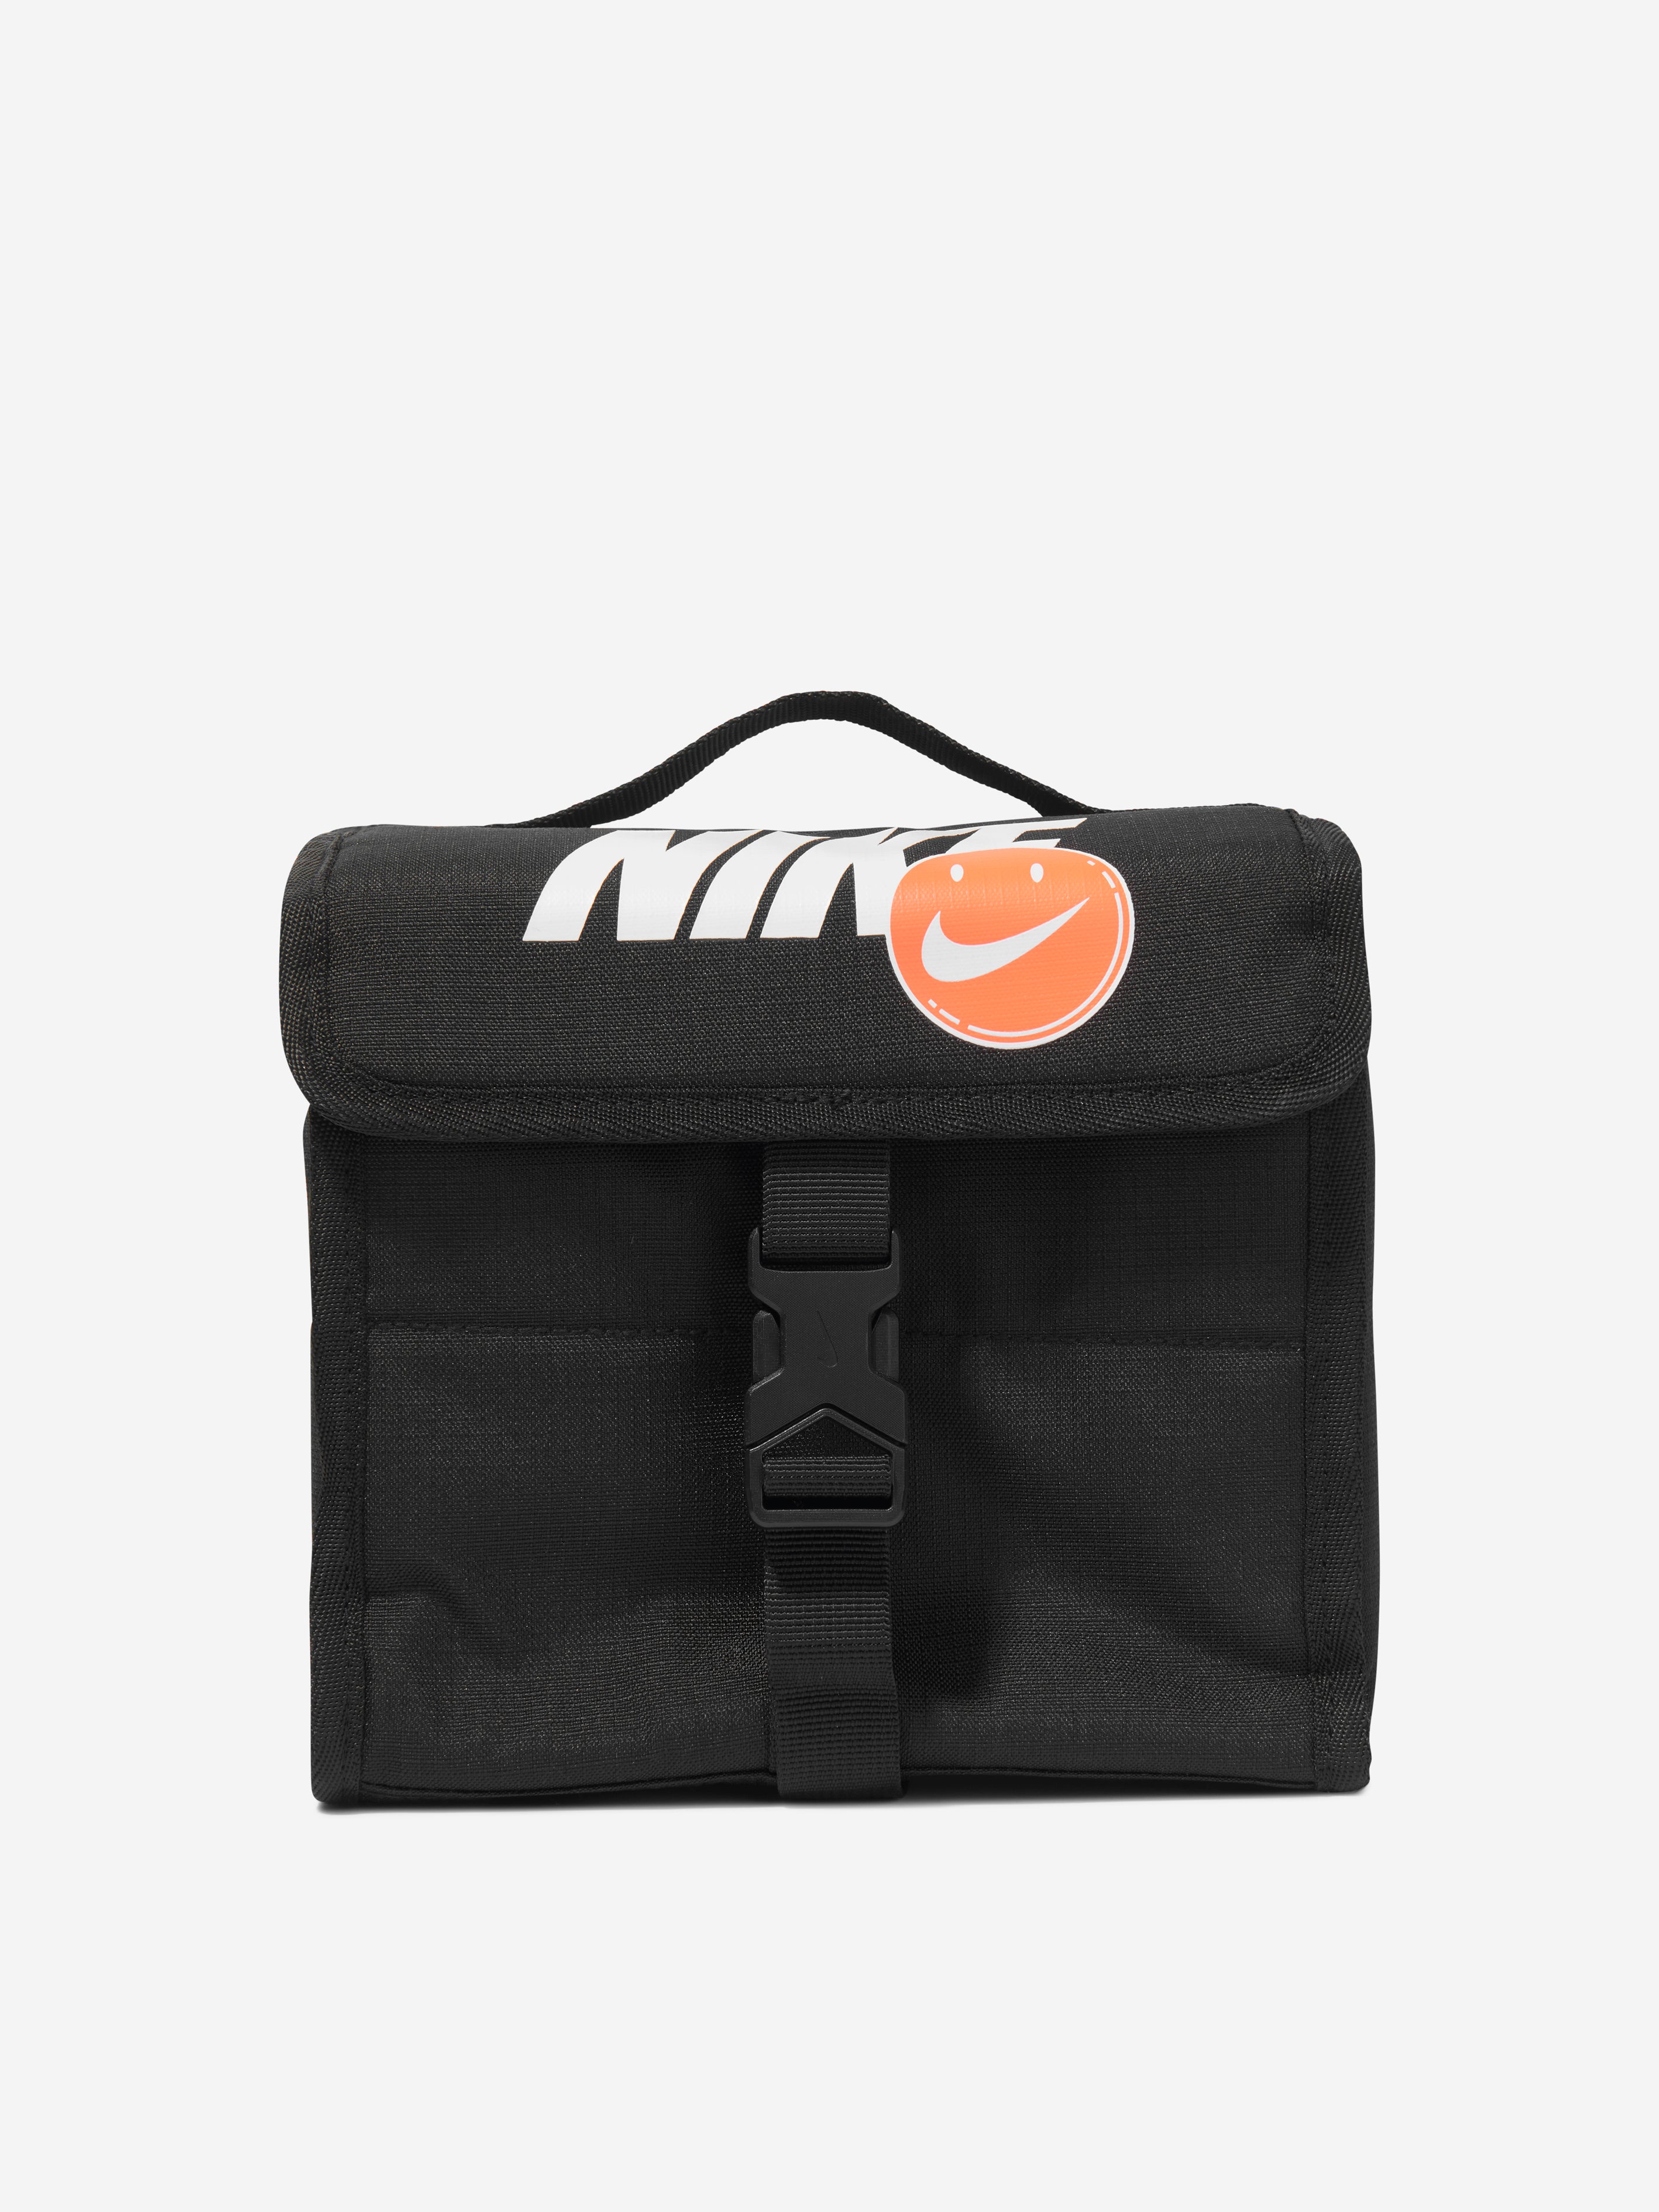 Designer Lunch Bag-unisex-handbag Nylon Zipper Lunch Bag -  Israel